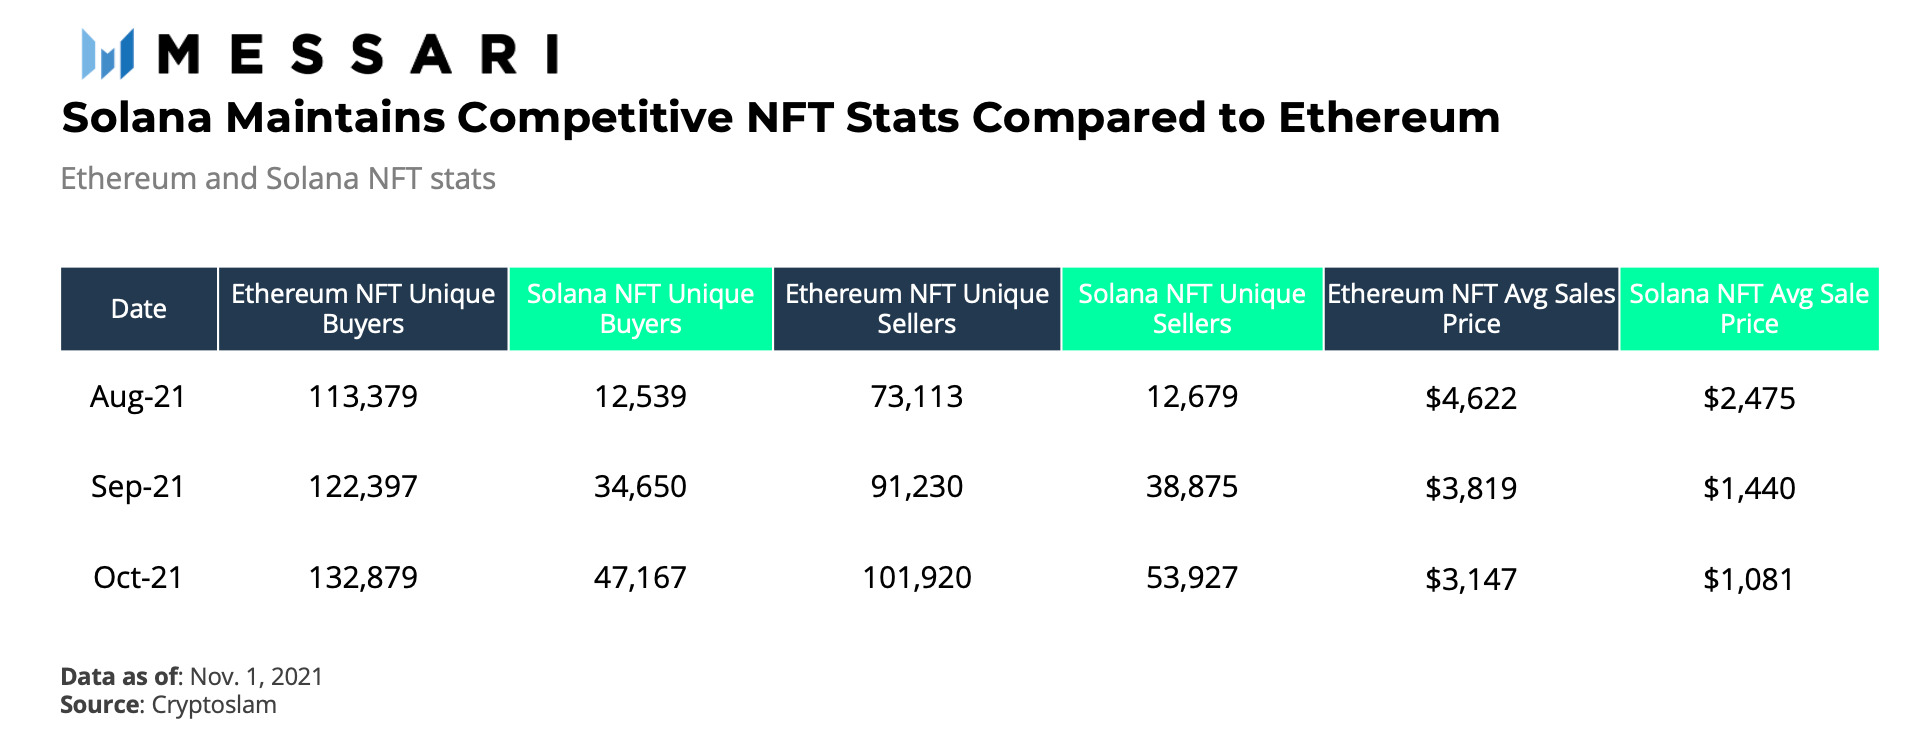 Chỉ số so sánh NFT giữa Solana và Ethereum. Nguồn: Messari